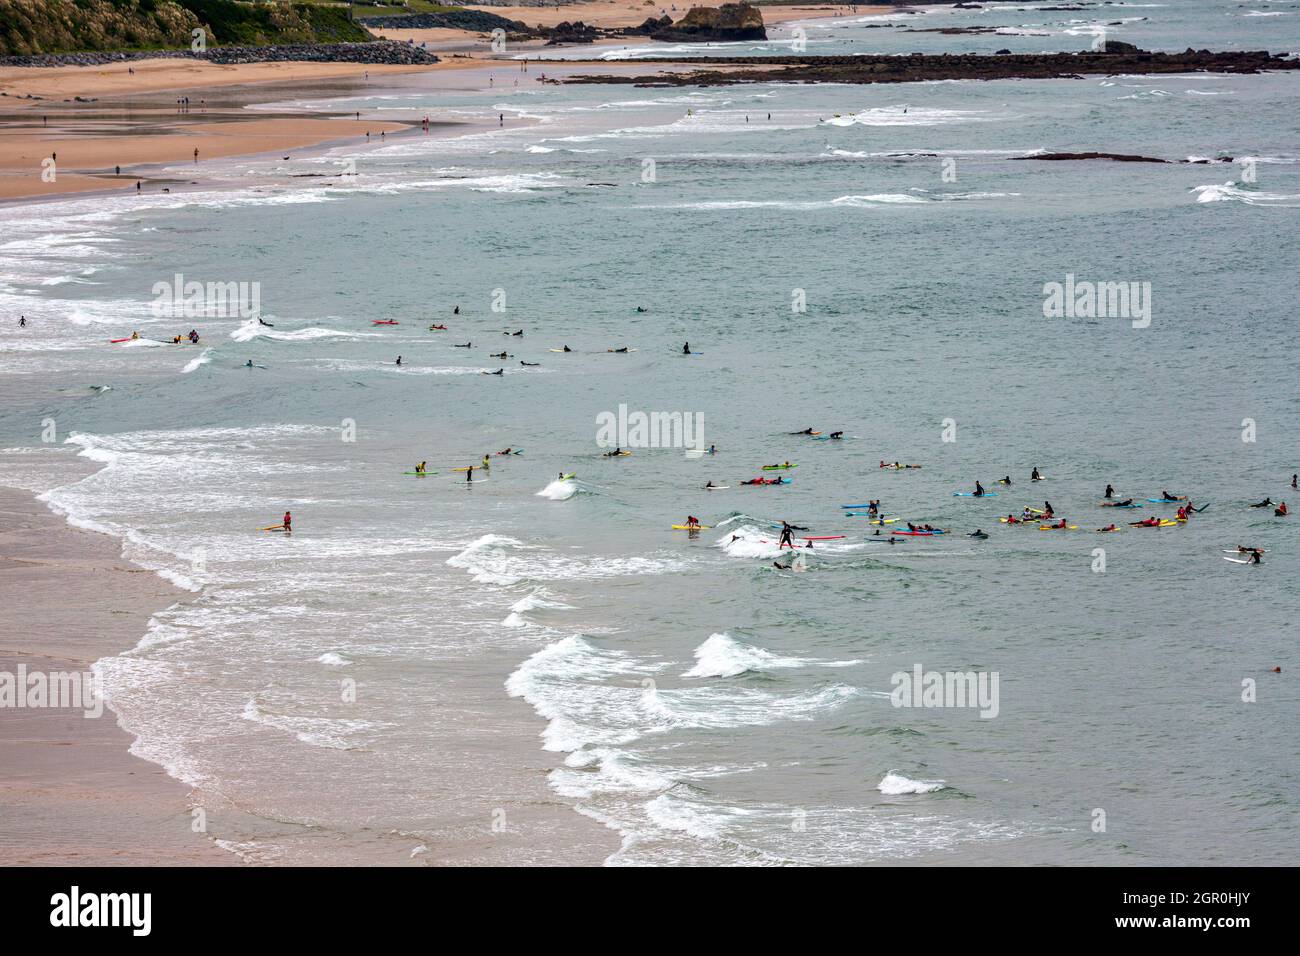 Surfeurs sur la plage Côte des Basques.Biarritz, Pyrénées-Atlantiques, France Banque D'Images